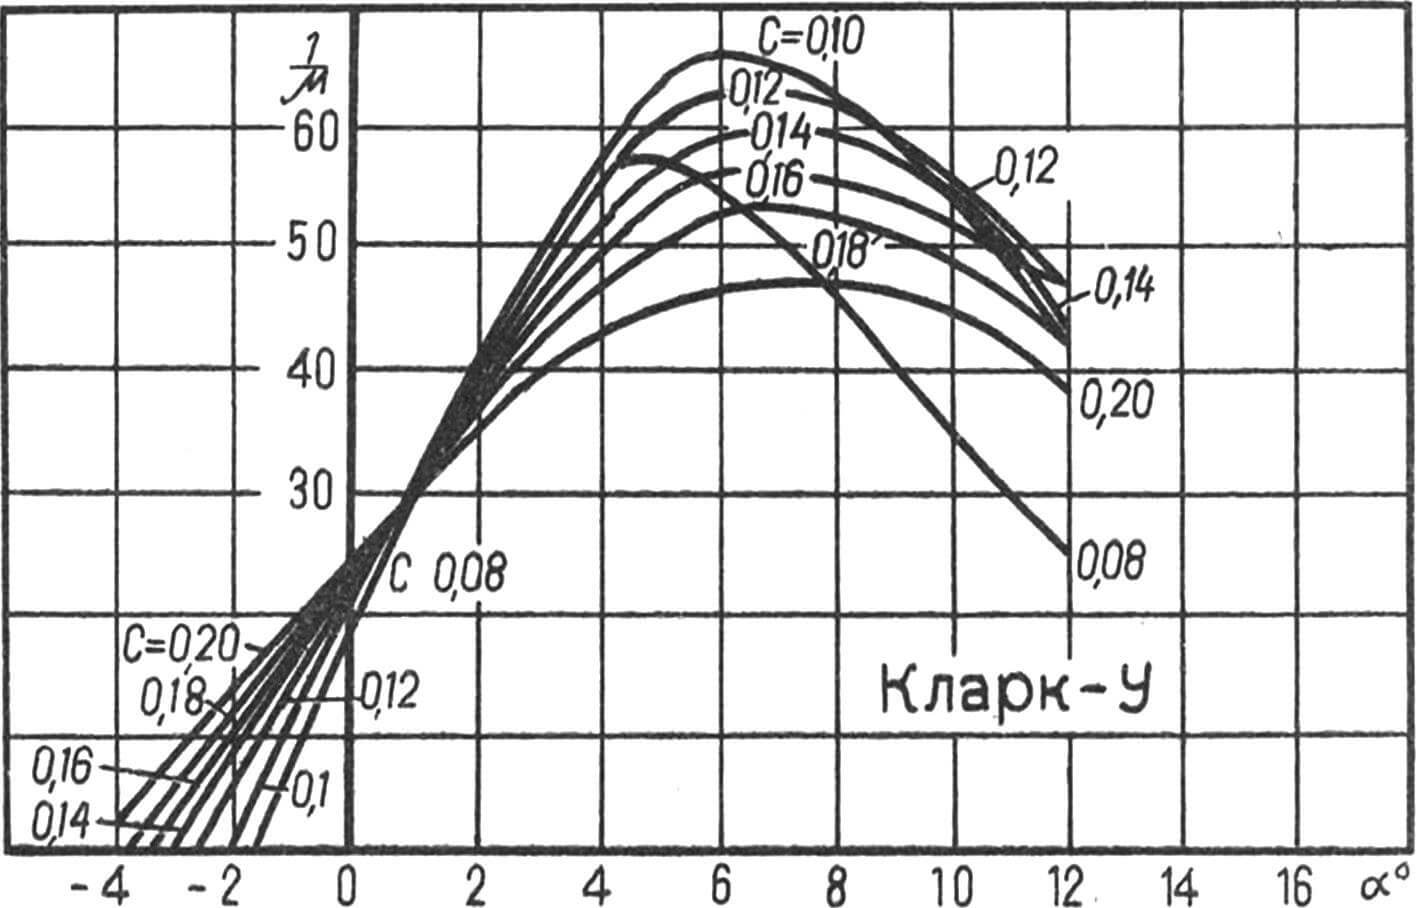 Зависимость обратного аэродинамического качества профиля Кларк-У от угла атаки.